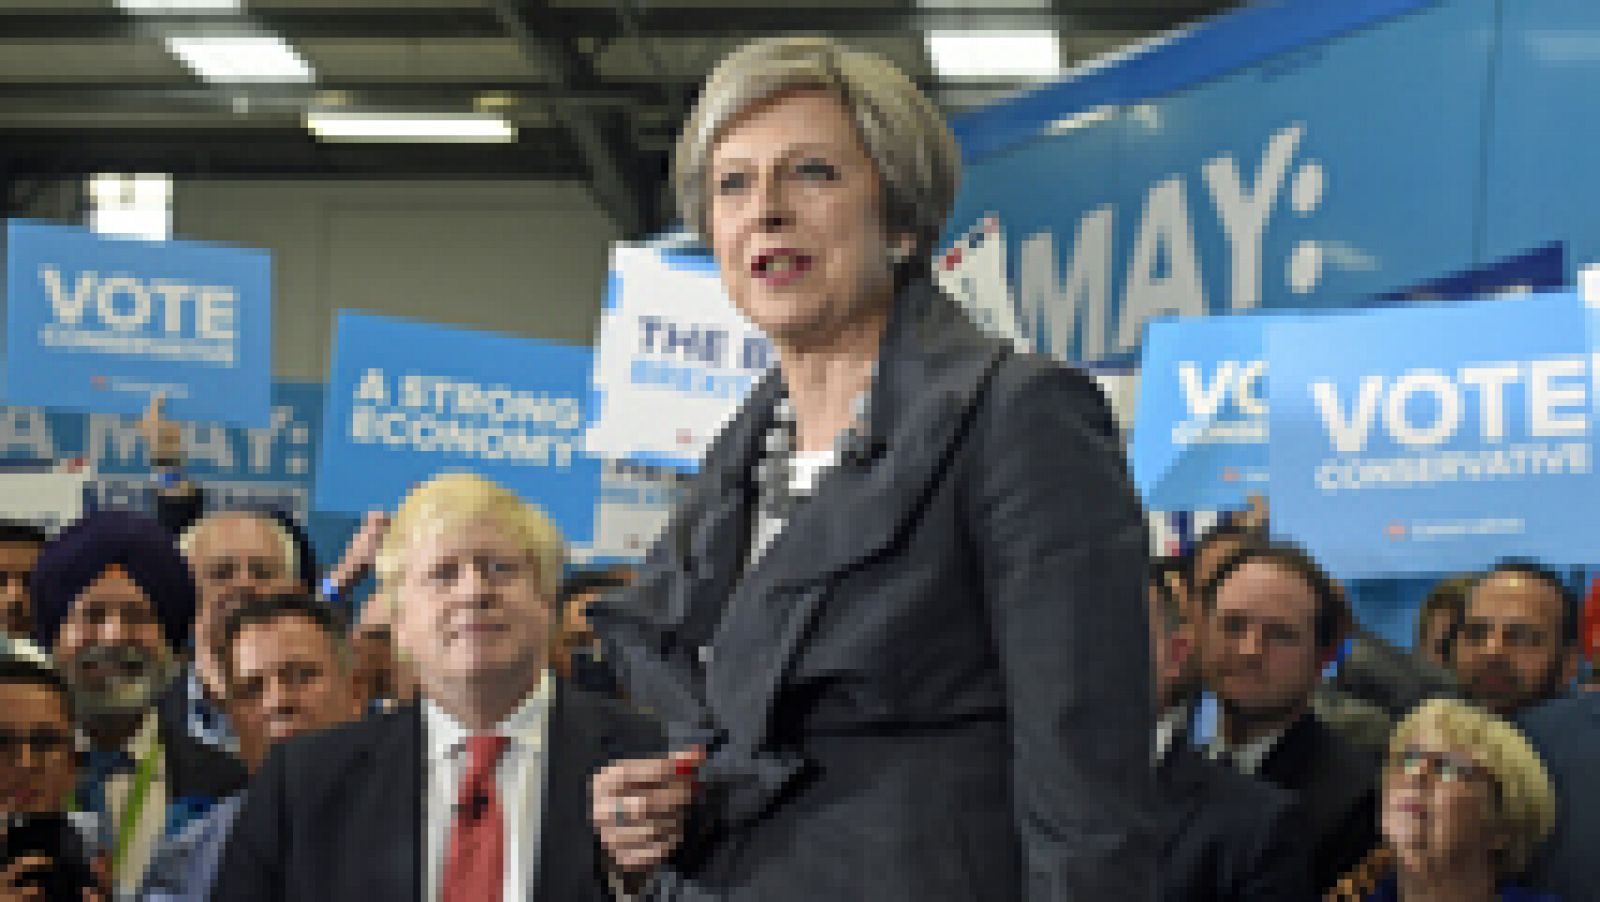 Los recientes atentados convierten la campaña electoral británica en un debate sobre la política de seguridad